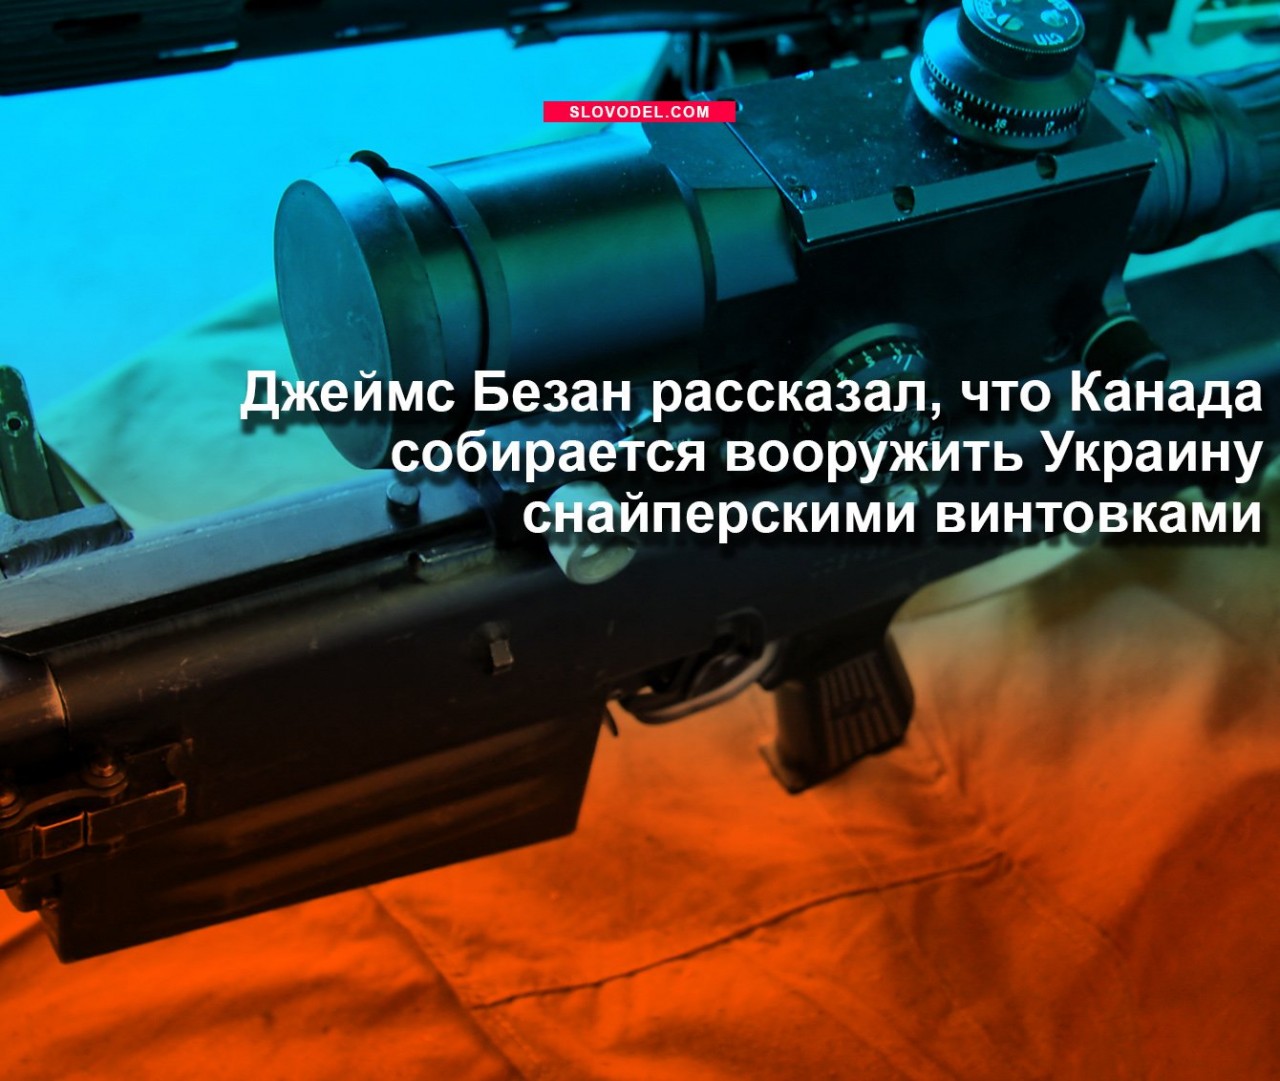 Джеймс Безан рассказал, что Канада собирается вооружить Украину снайперскими винтовками